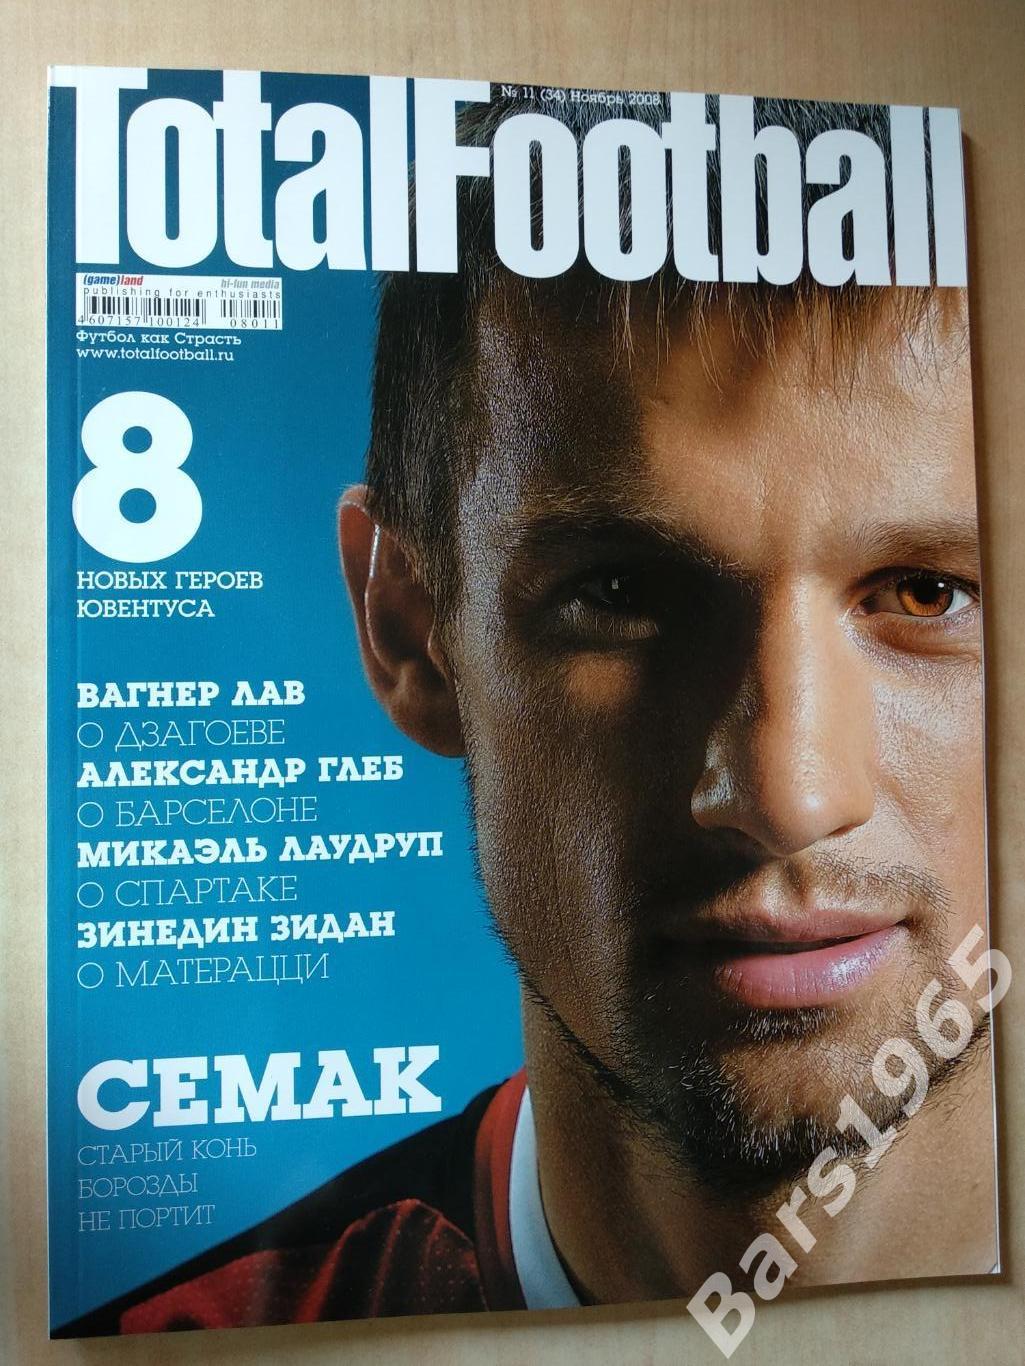 Total Football № 11 (34) 2008 с постером Дмитрий Торбинский и Дженнаро Гаттузо